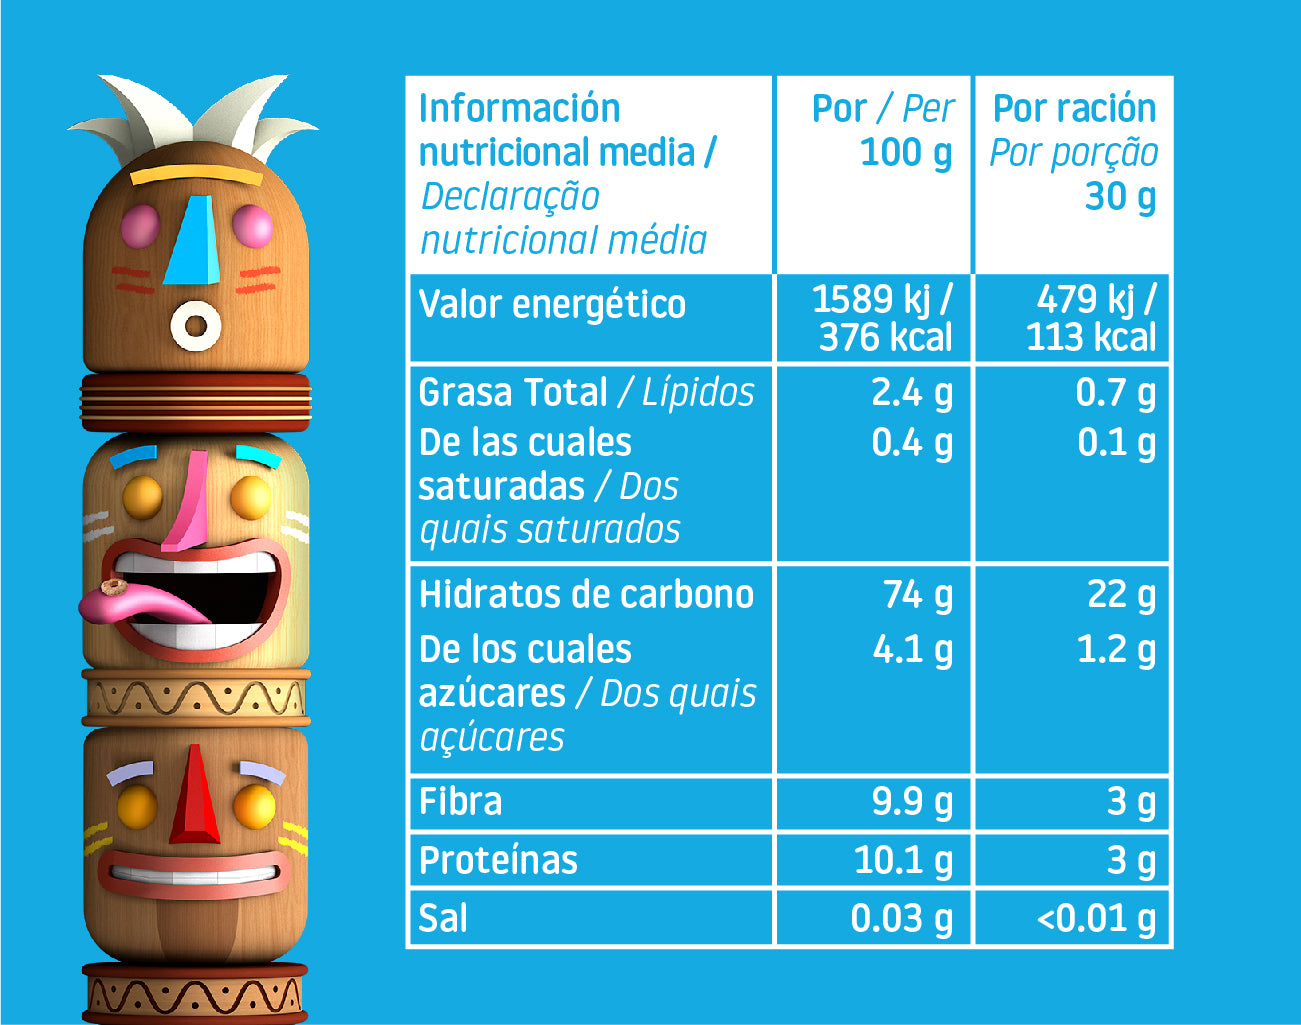 TRIBOO, los cereales de Smileat que aportan 5 veces más fibra que los  tradicionales - Alimentación